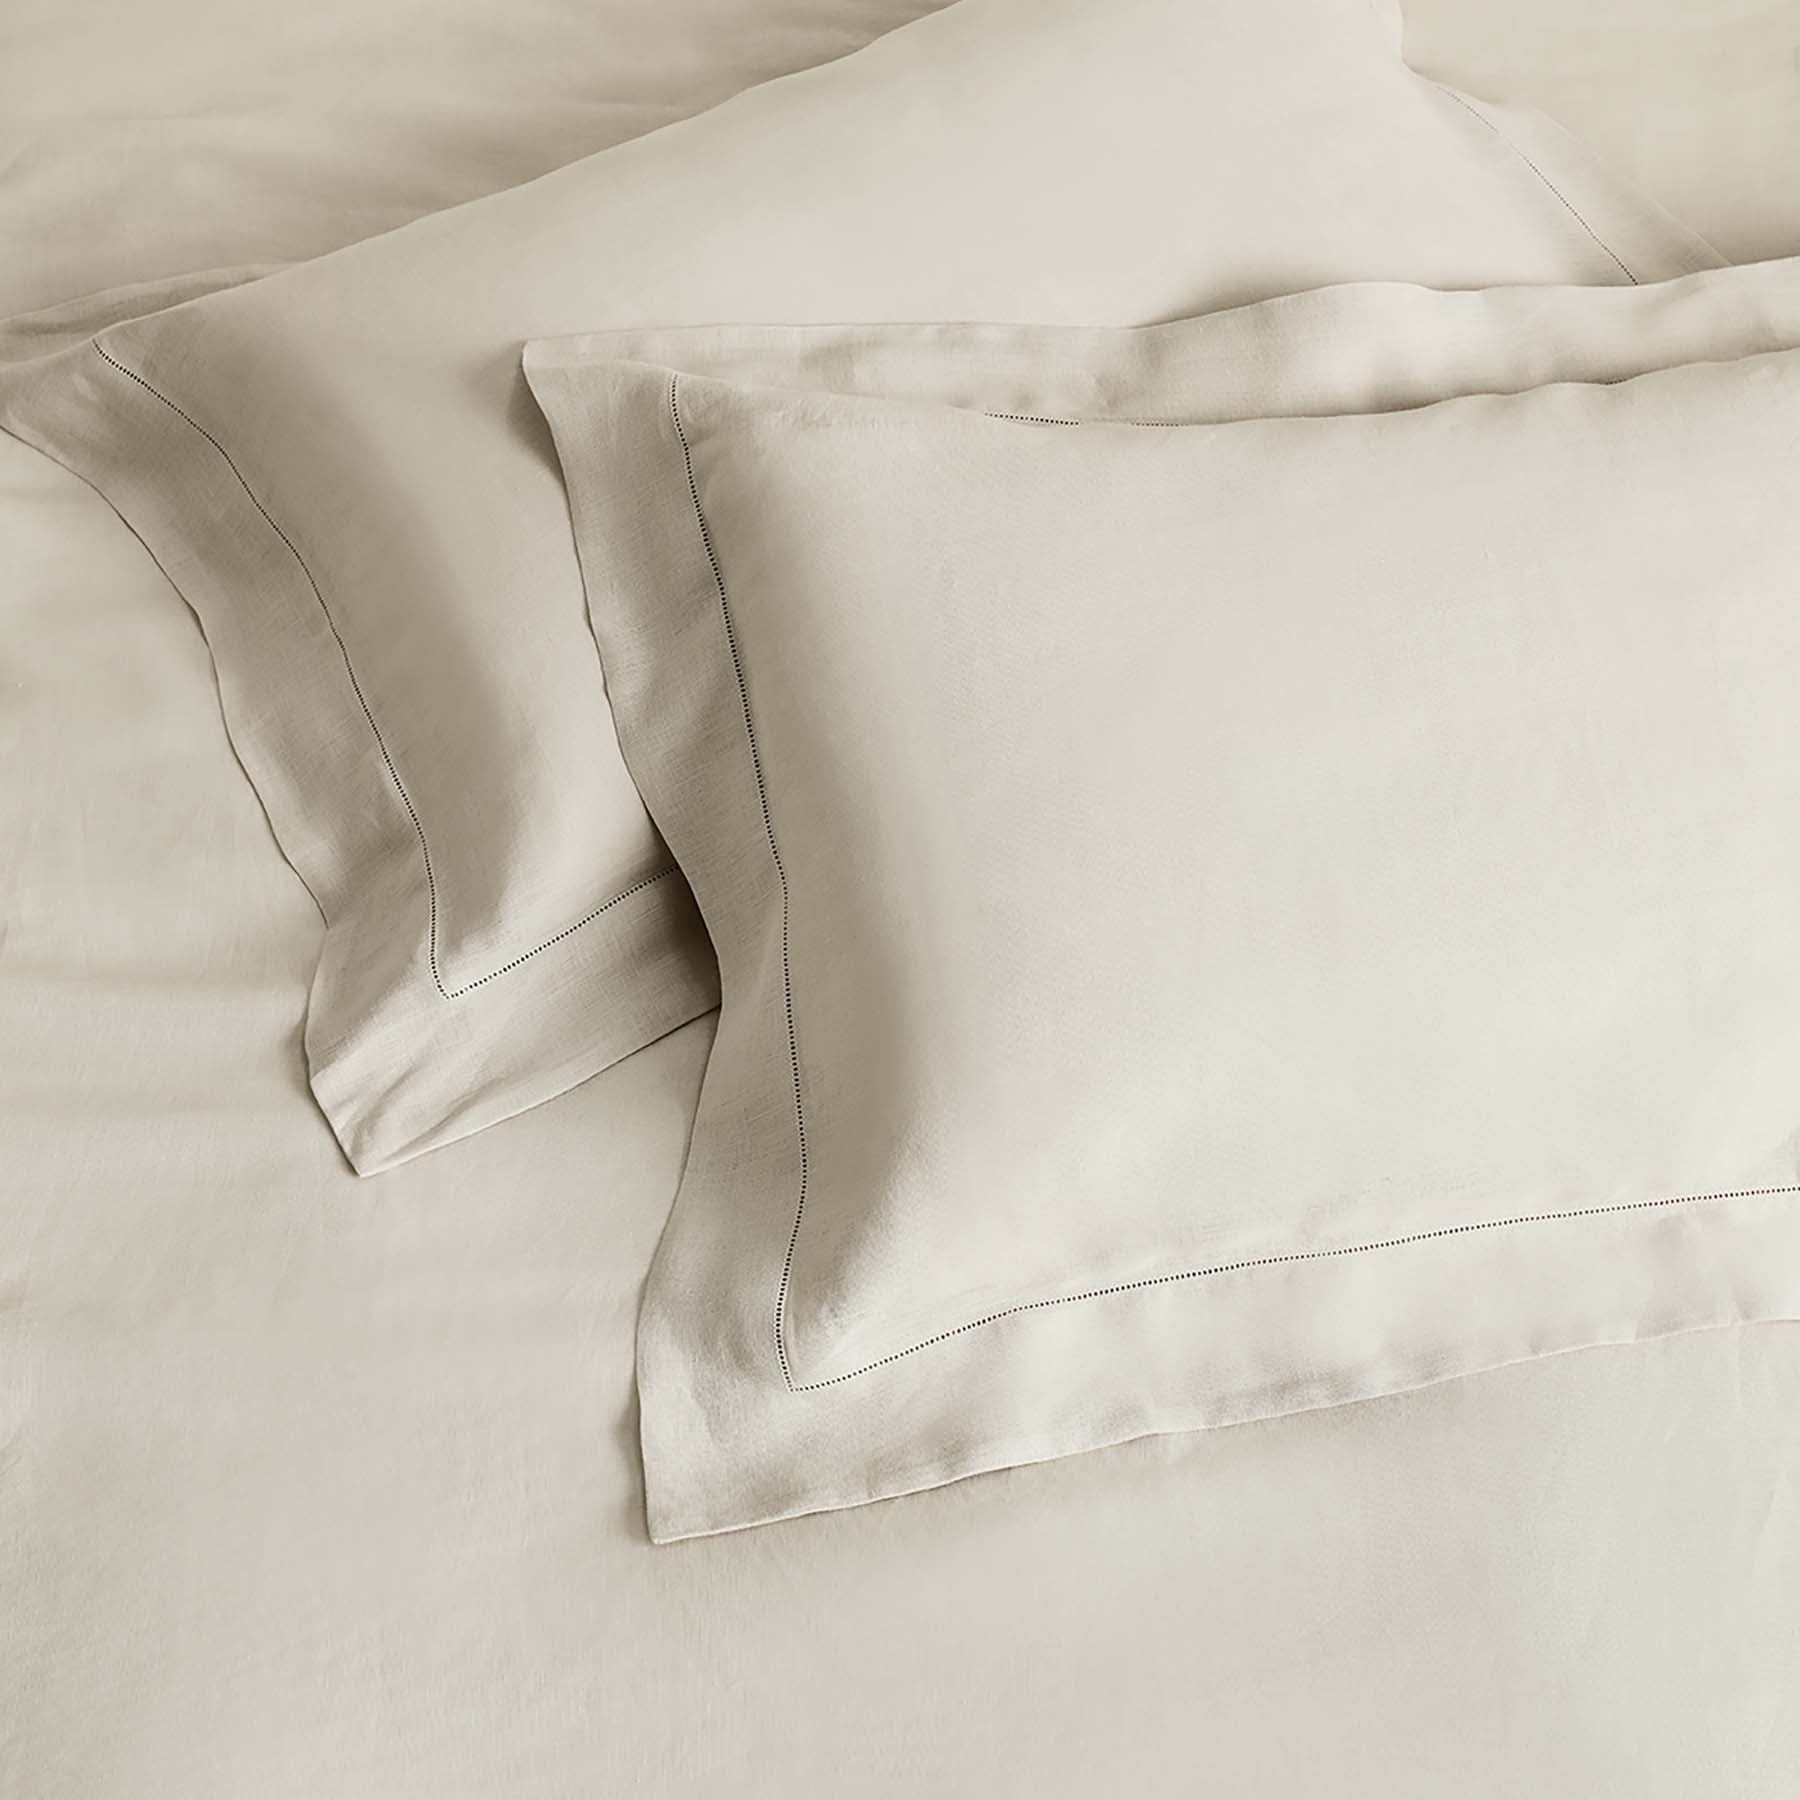 Kings & Queens Vintage Linen Starter Bundle Set in Parchment Pillowcase Sham Set